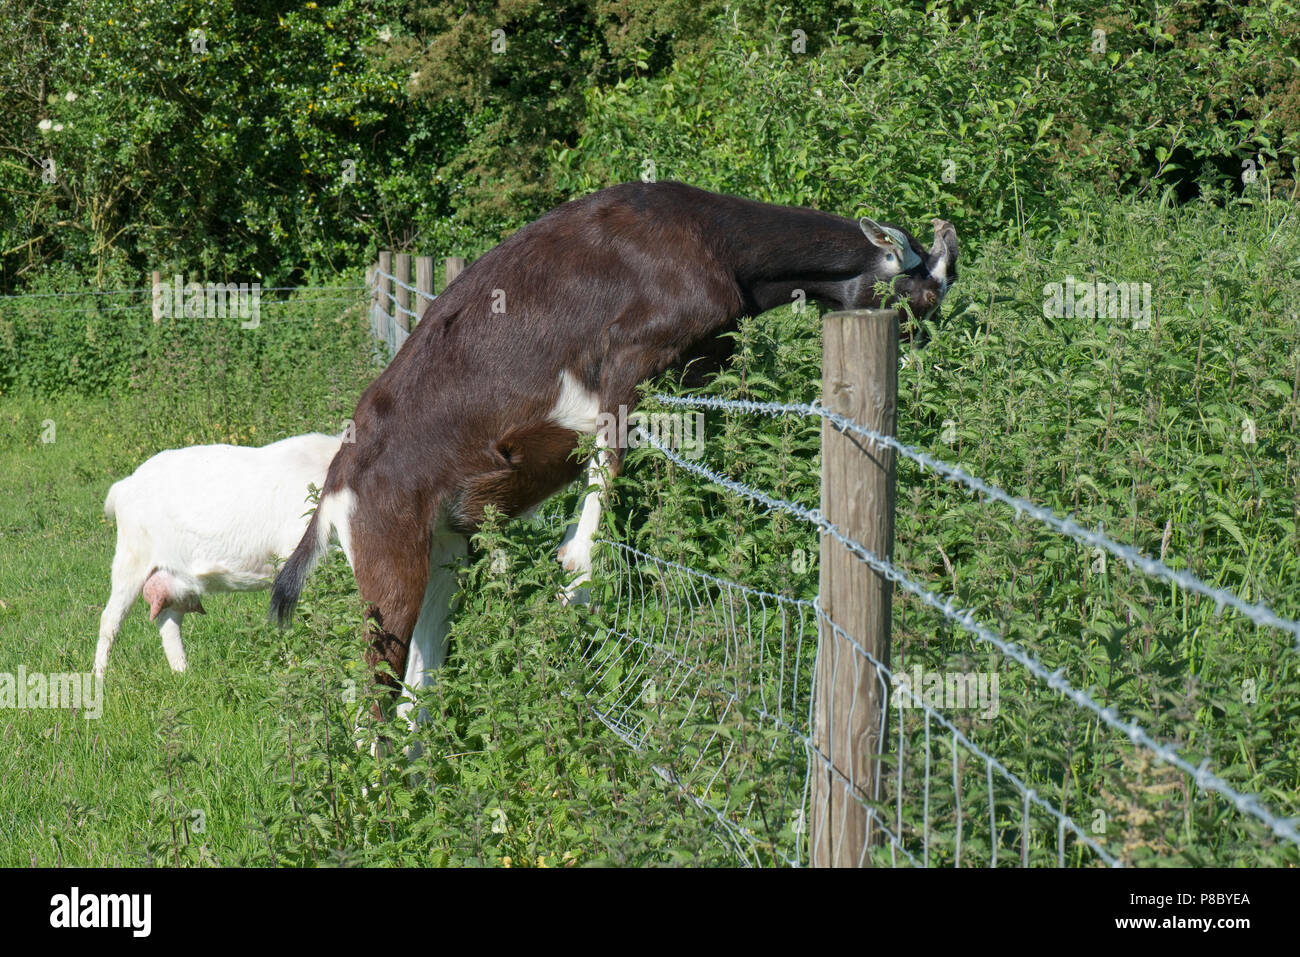 Ein toggenburg Kreuz, schwarz-weiße Ziege, die versuchen, auf Brennesseln und andere Pflanzen in einem angrenzenden Feld Berkshire zu füttern, Juni Stockfoto